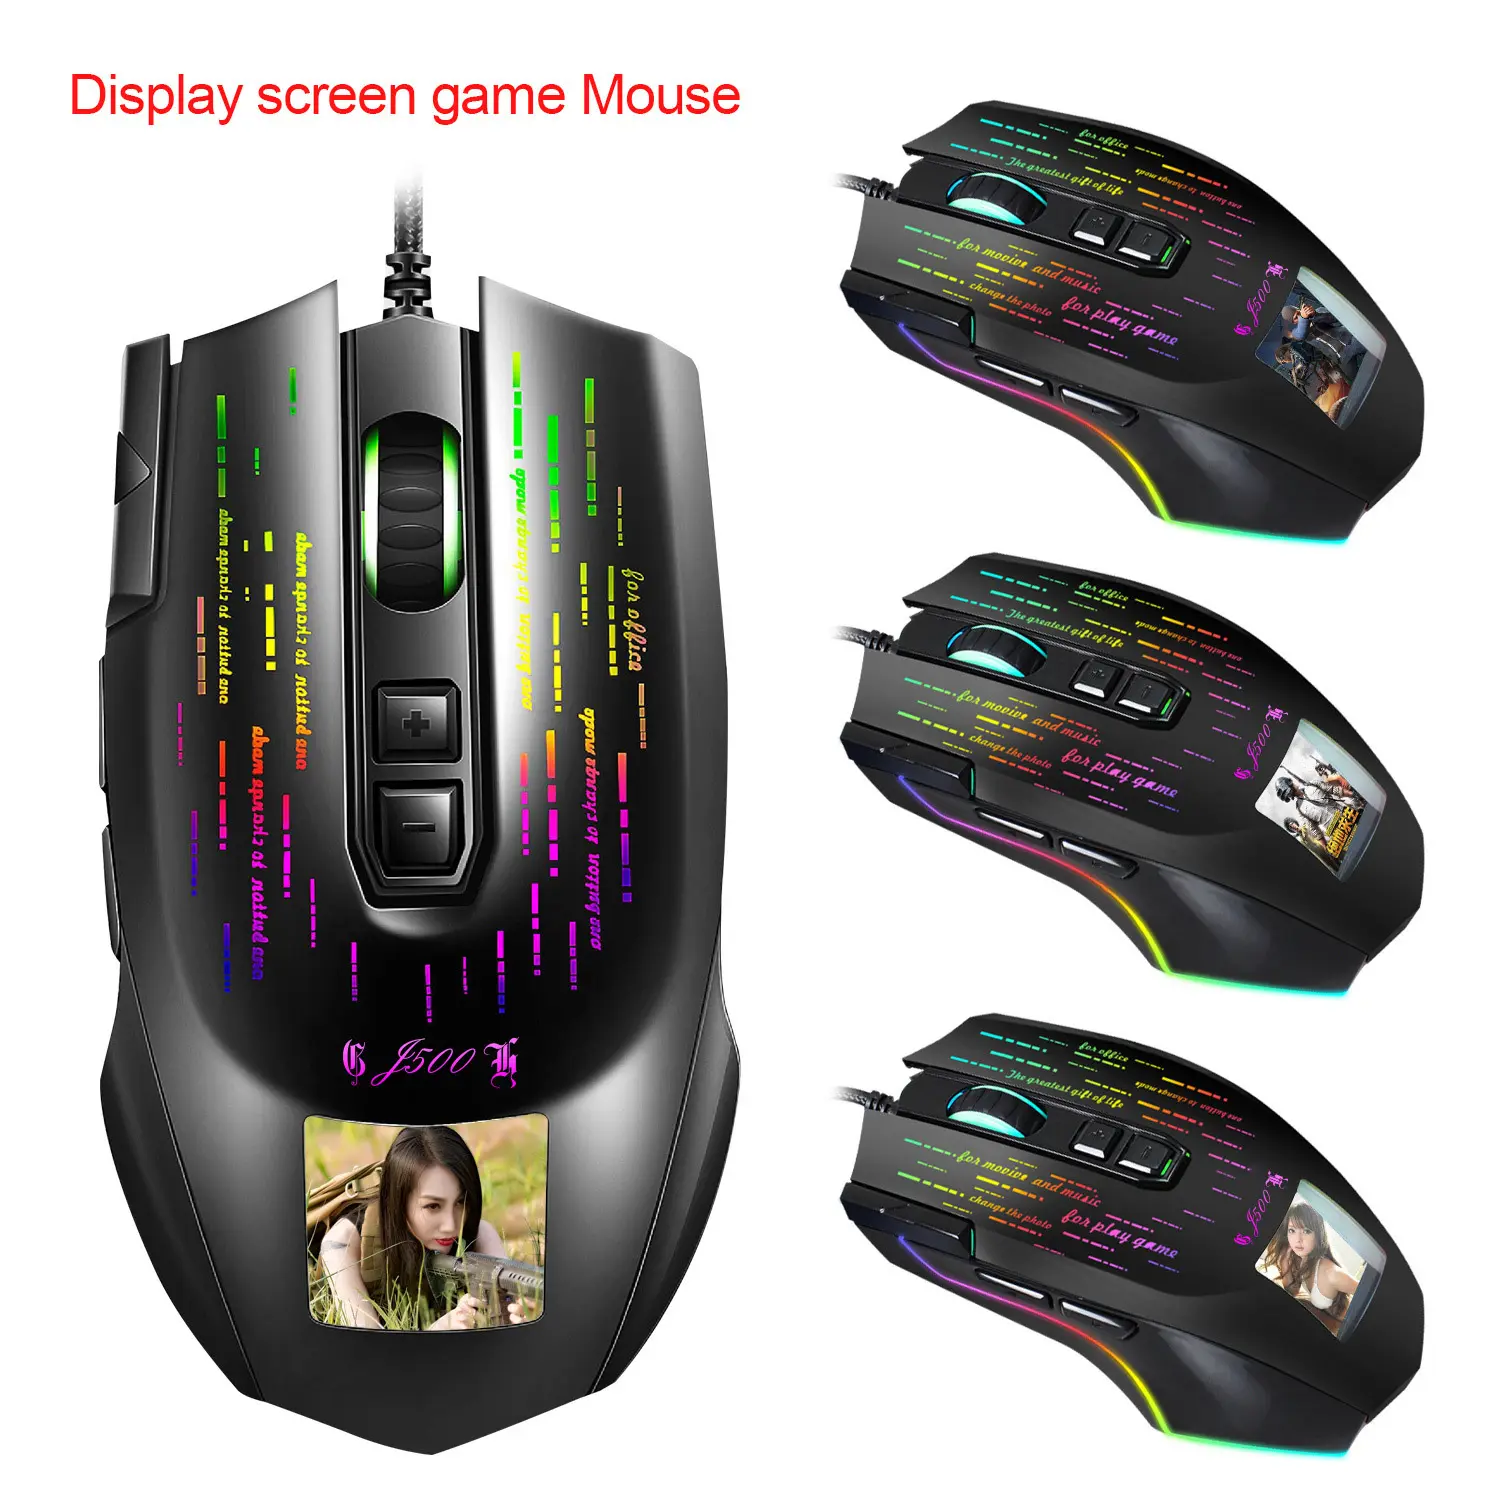 सस्ते जादू डिस्प्ले स्क्रीन कंप्यूटर माउस ergonomic logitech कंप्यूटर माउस gamer के आरजीबी गेमिंग माउस 2020